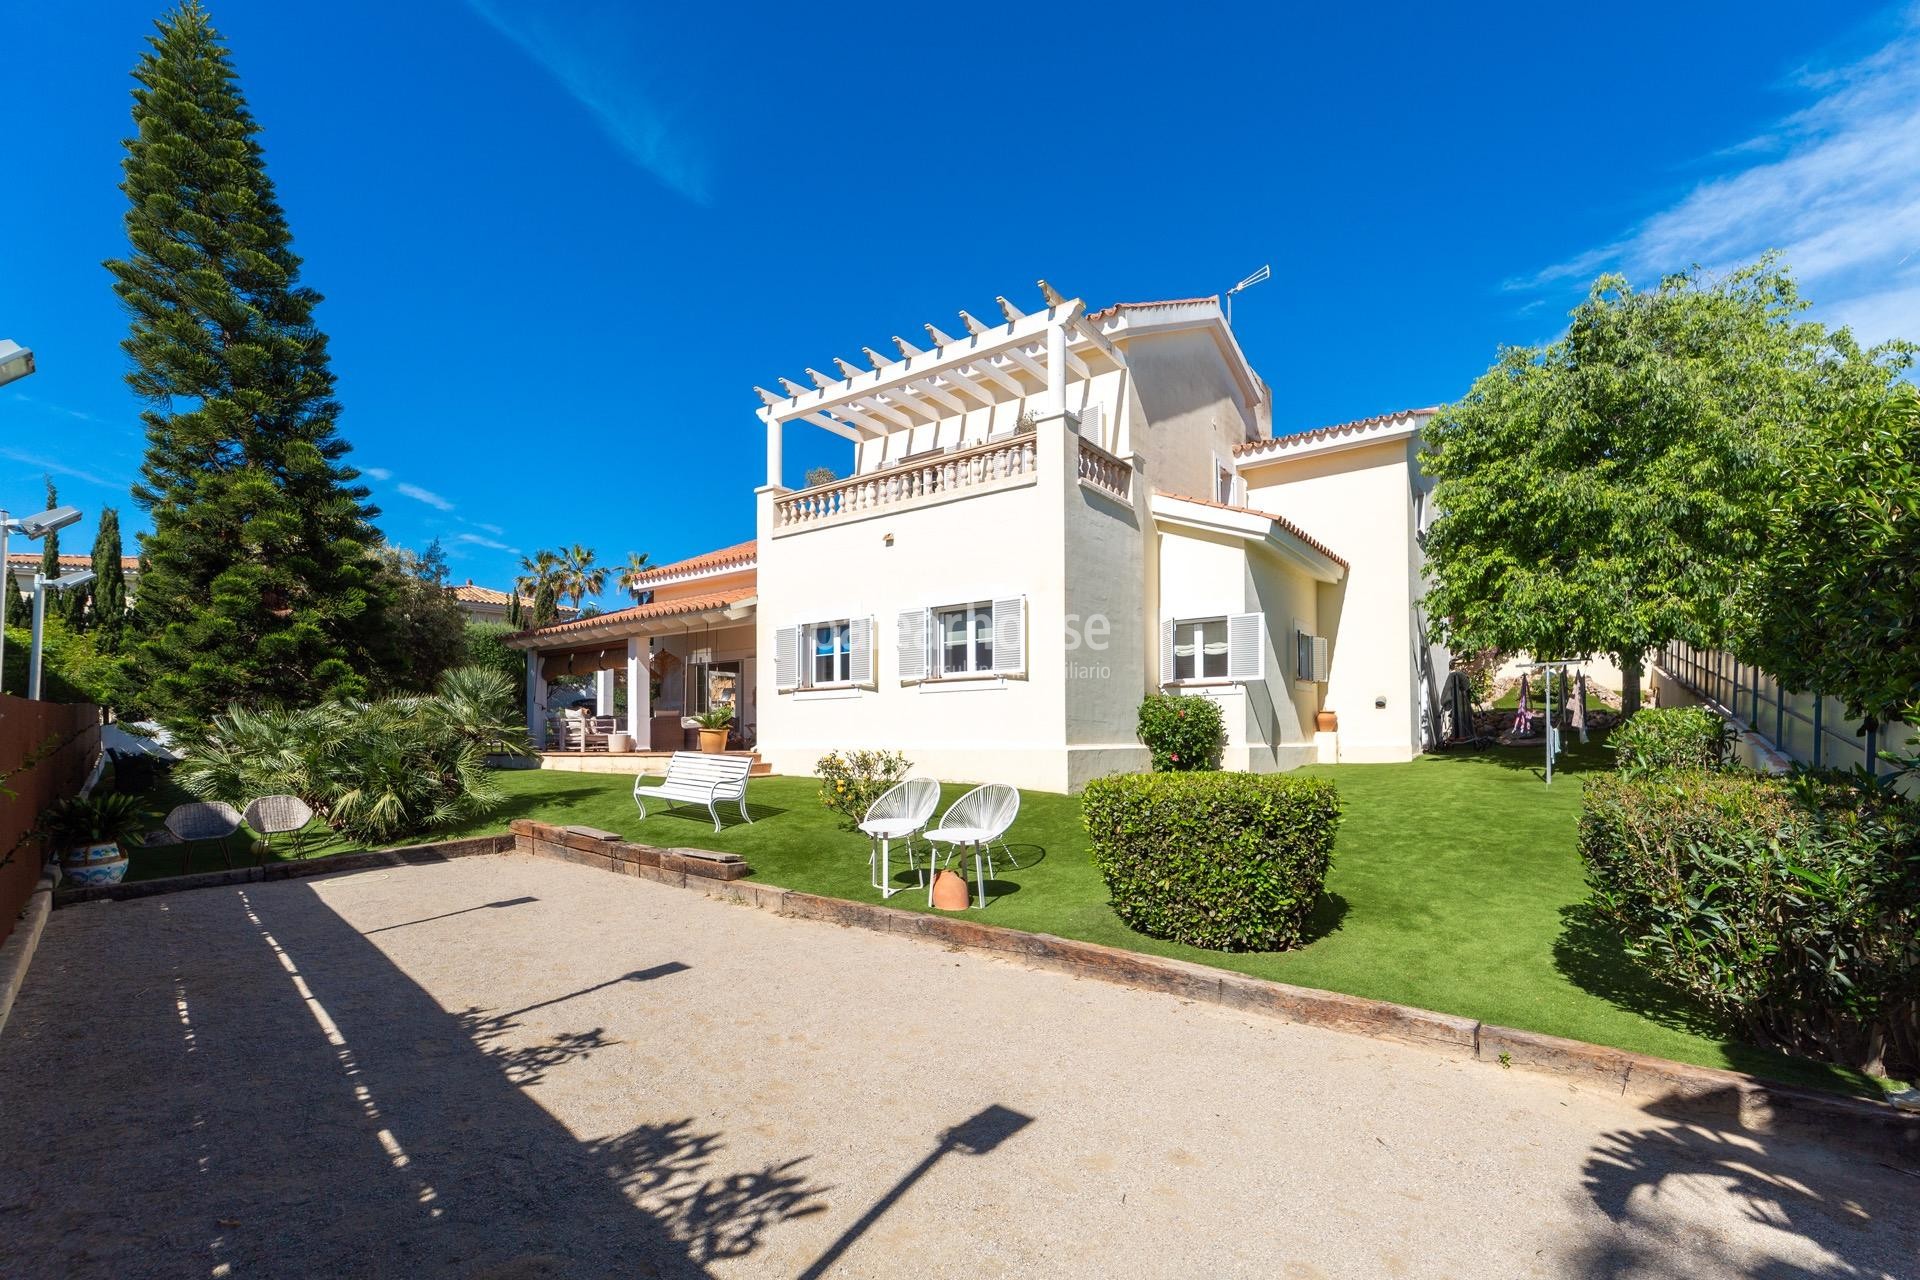 Geräumige mediterrane Villa in Santa Ponsa, offen zu Terrassen und großen Gärten mit Pool